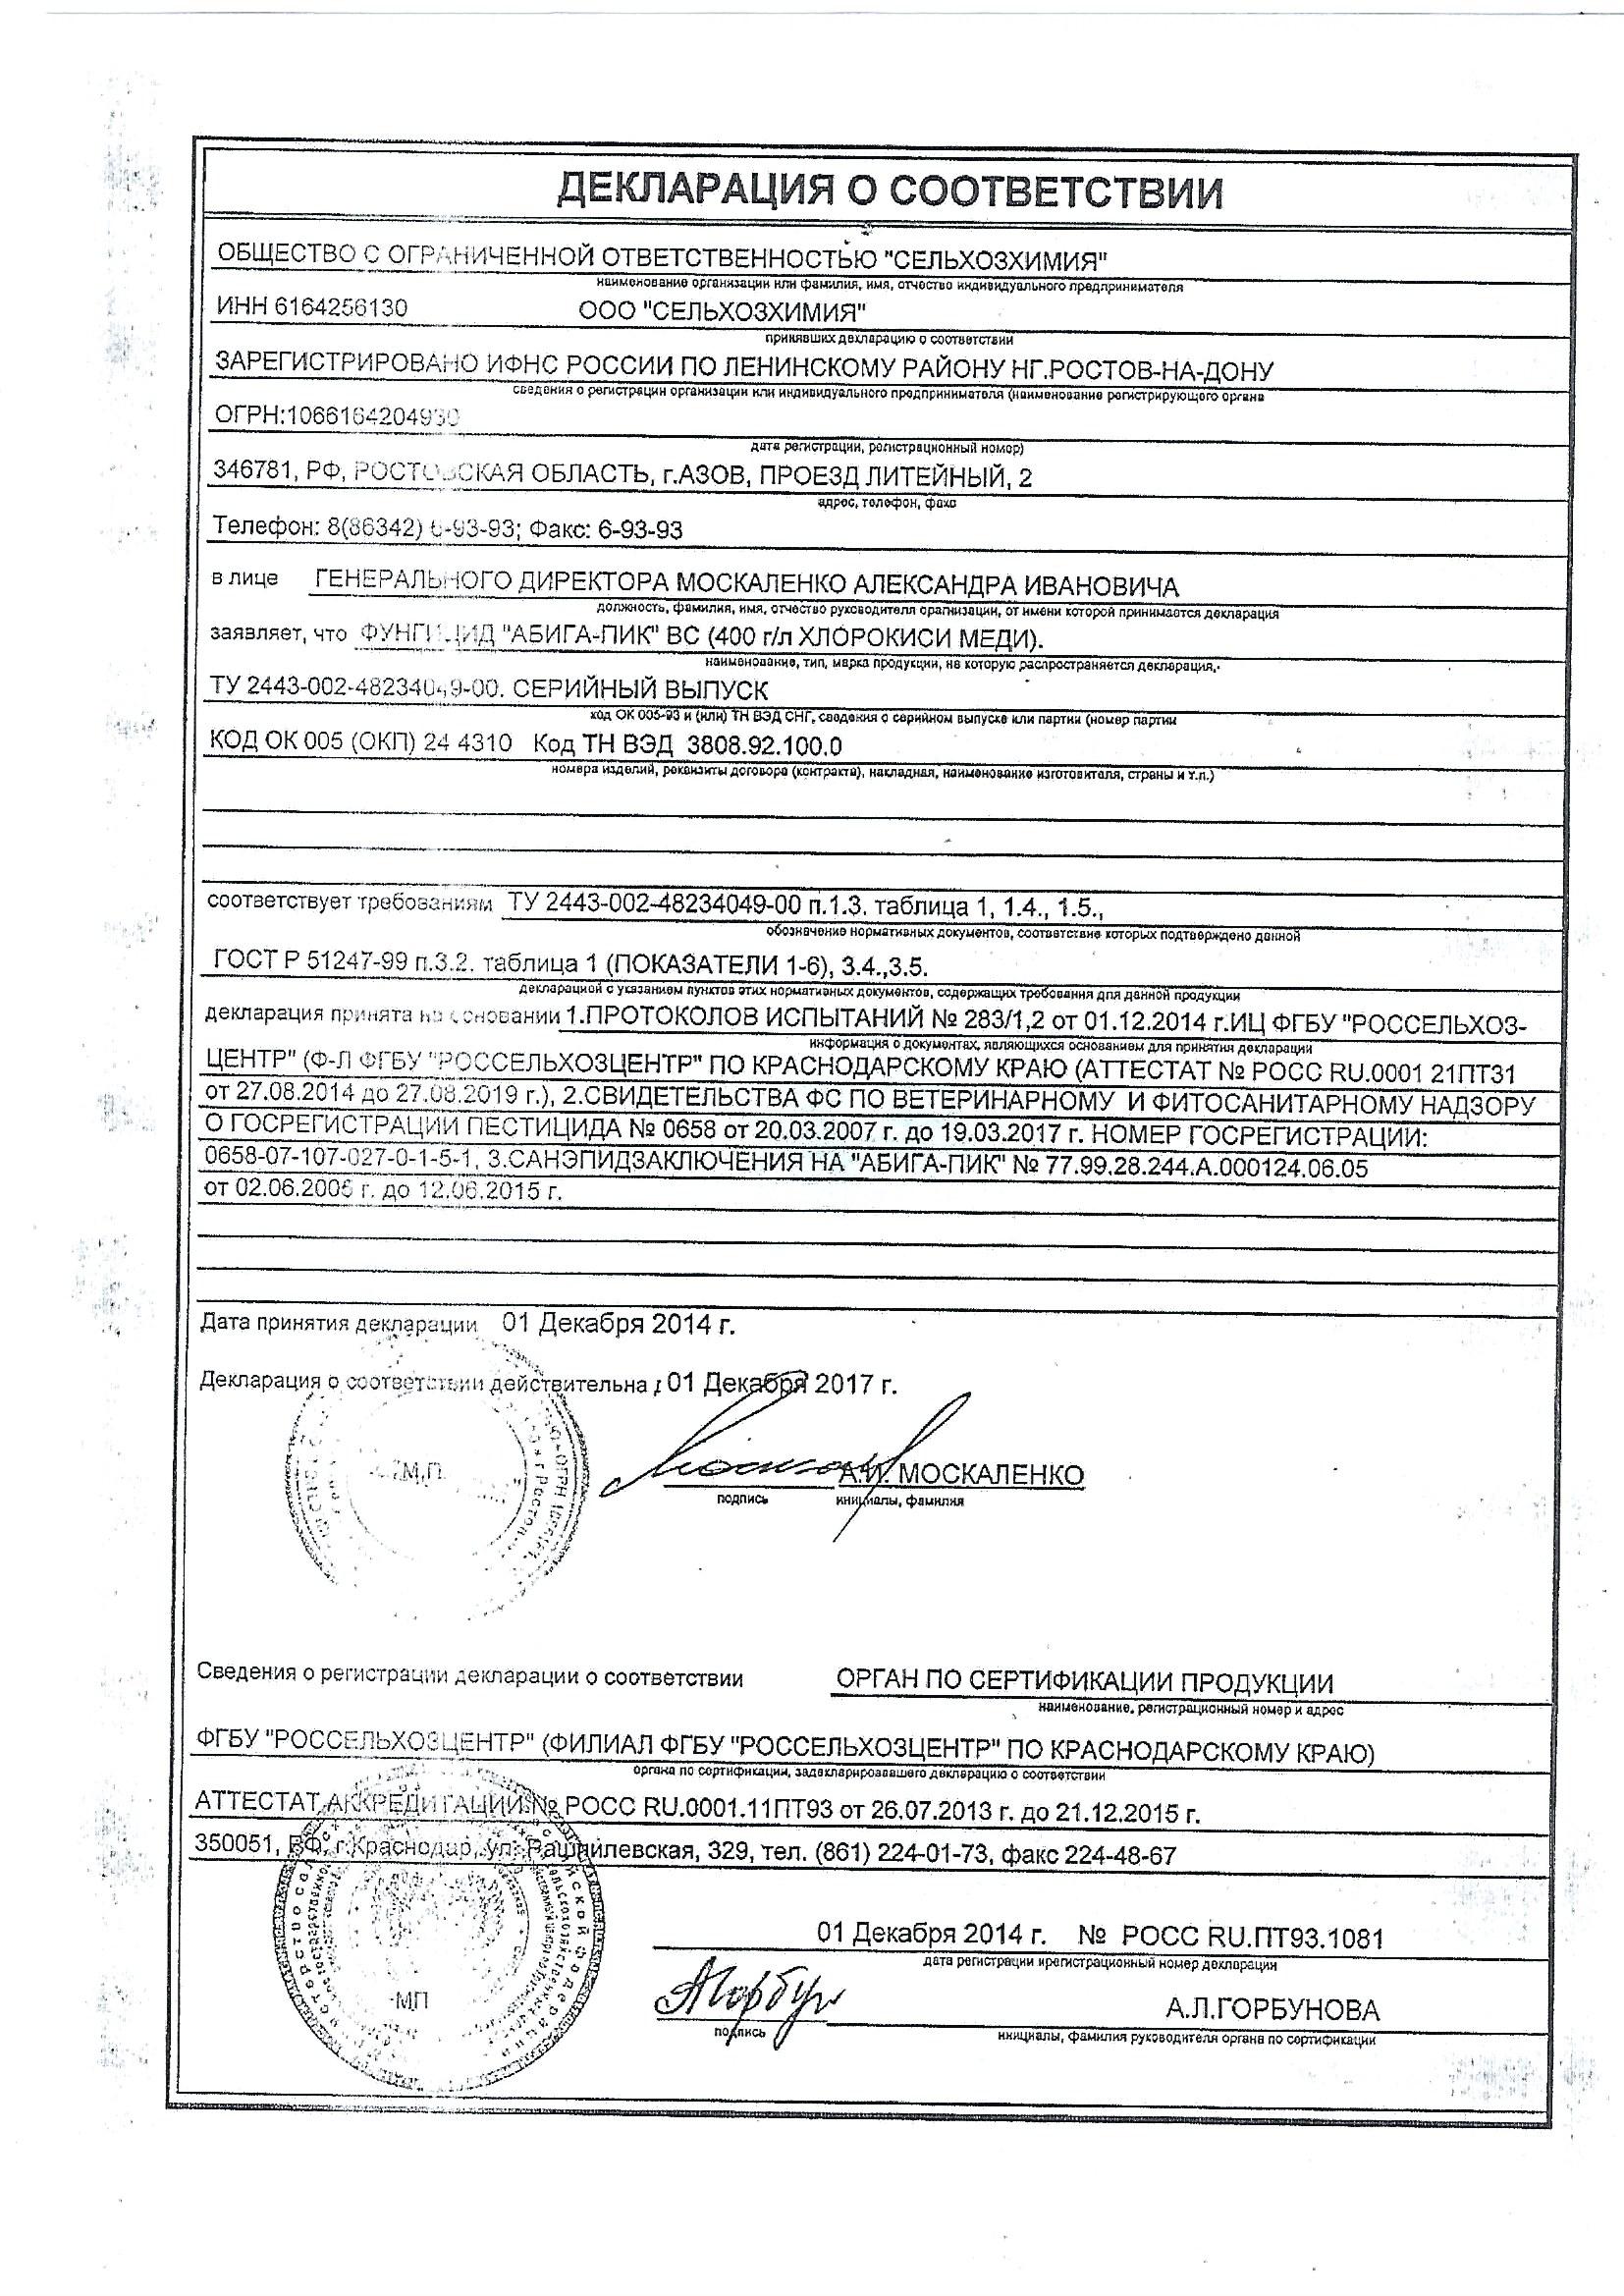 Абига-ПИК Декларация о соответствии